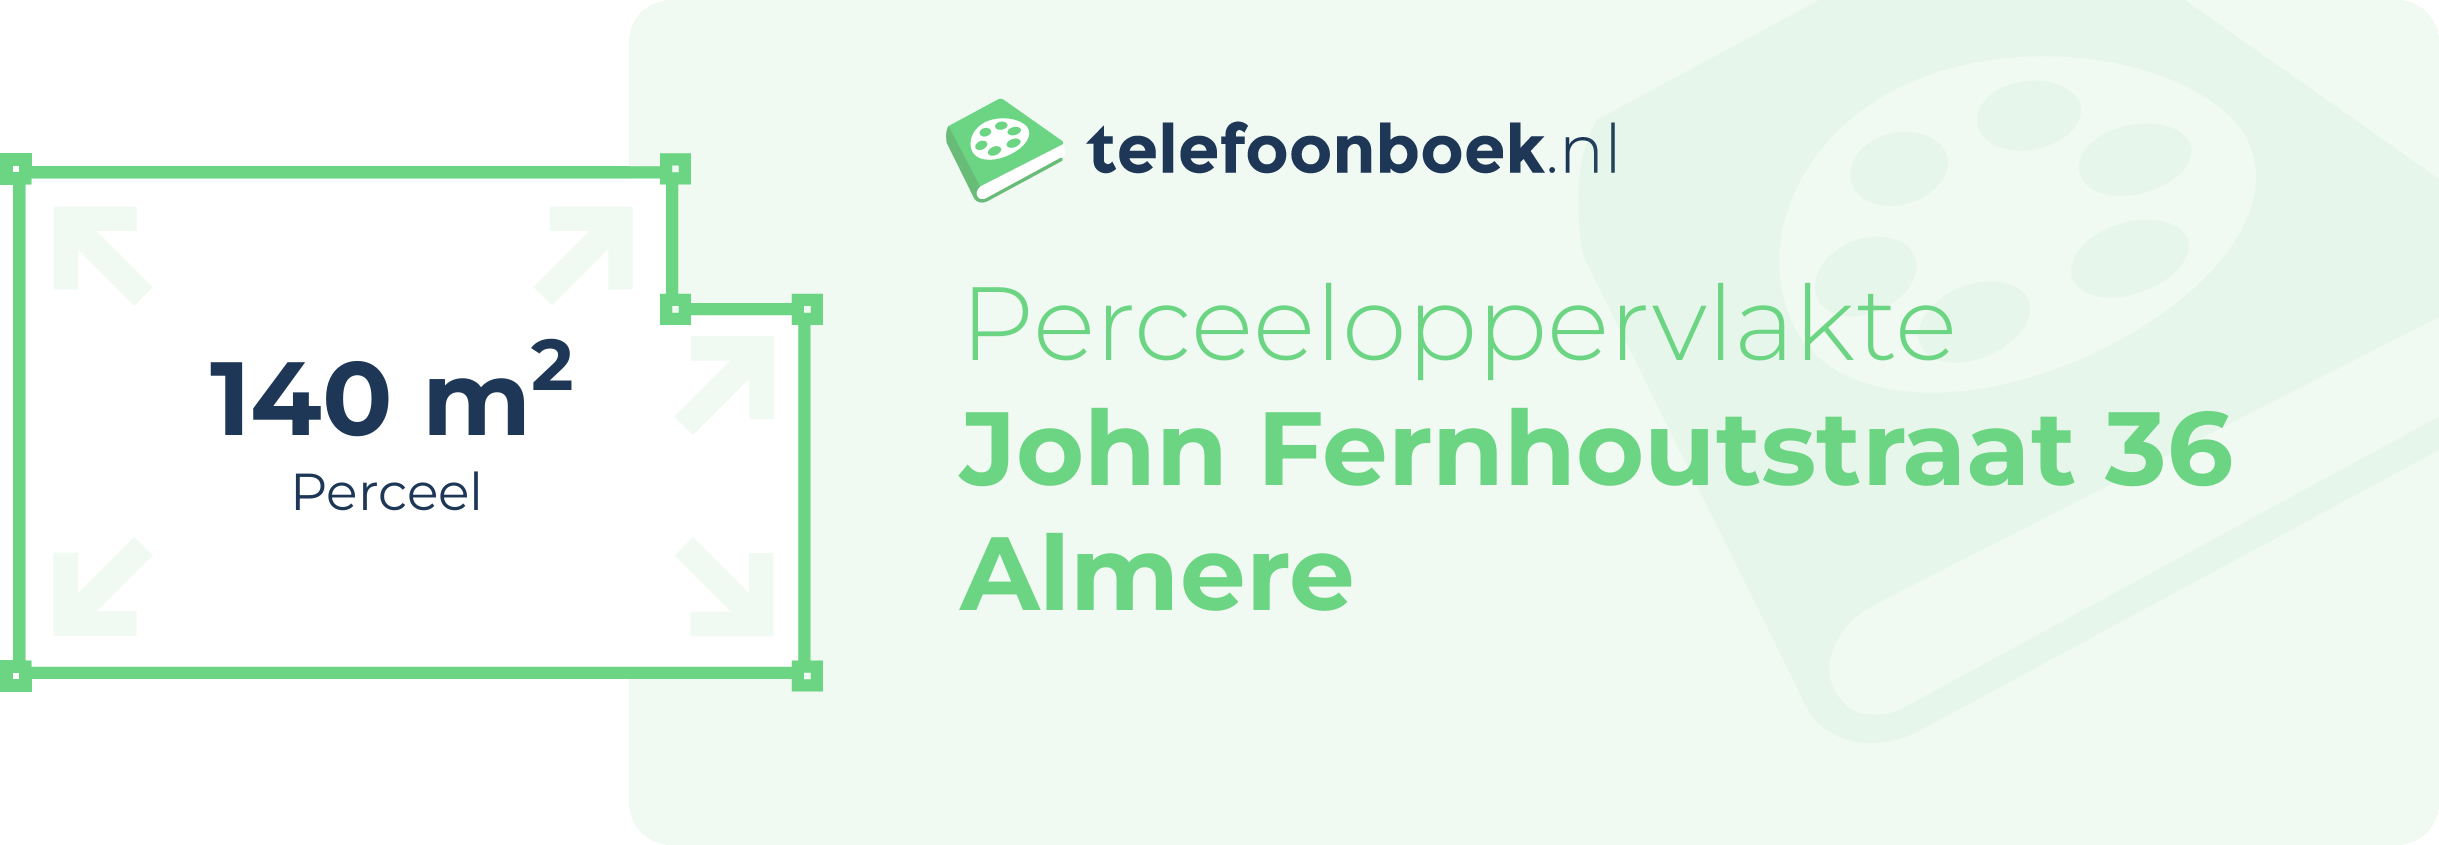 Perceeloppervlakte John Fernhoutstraat 36 Almere